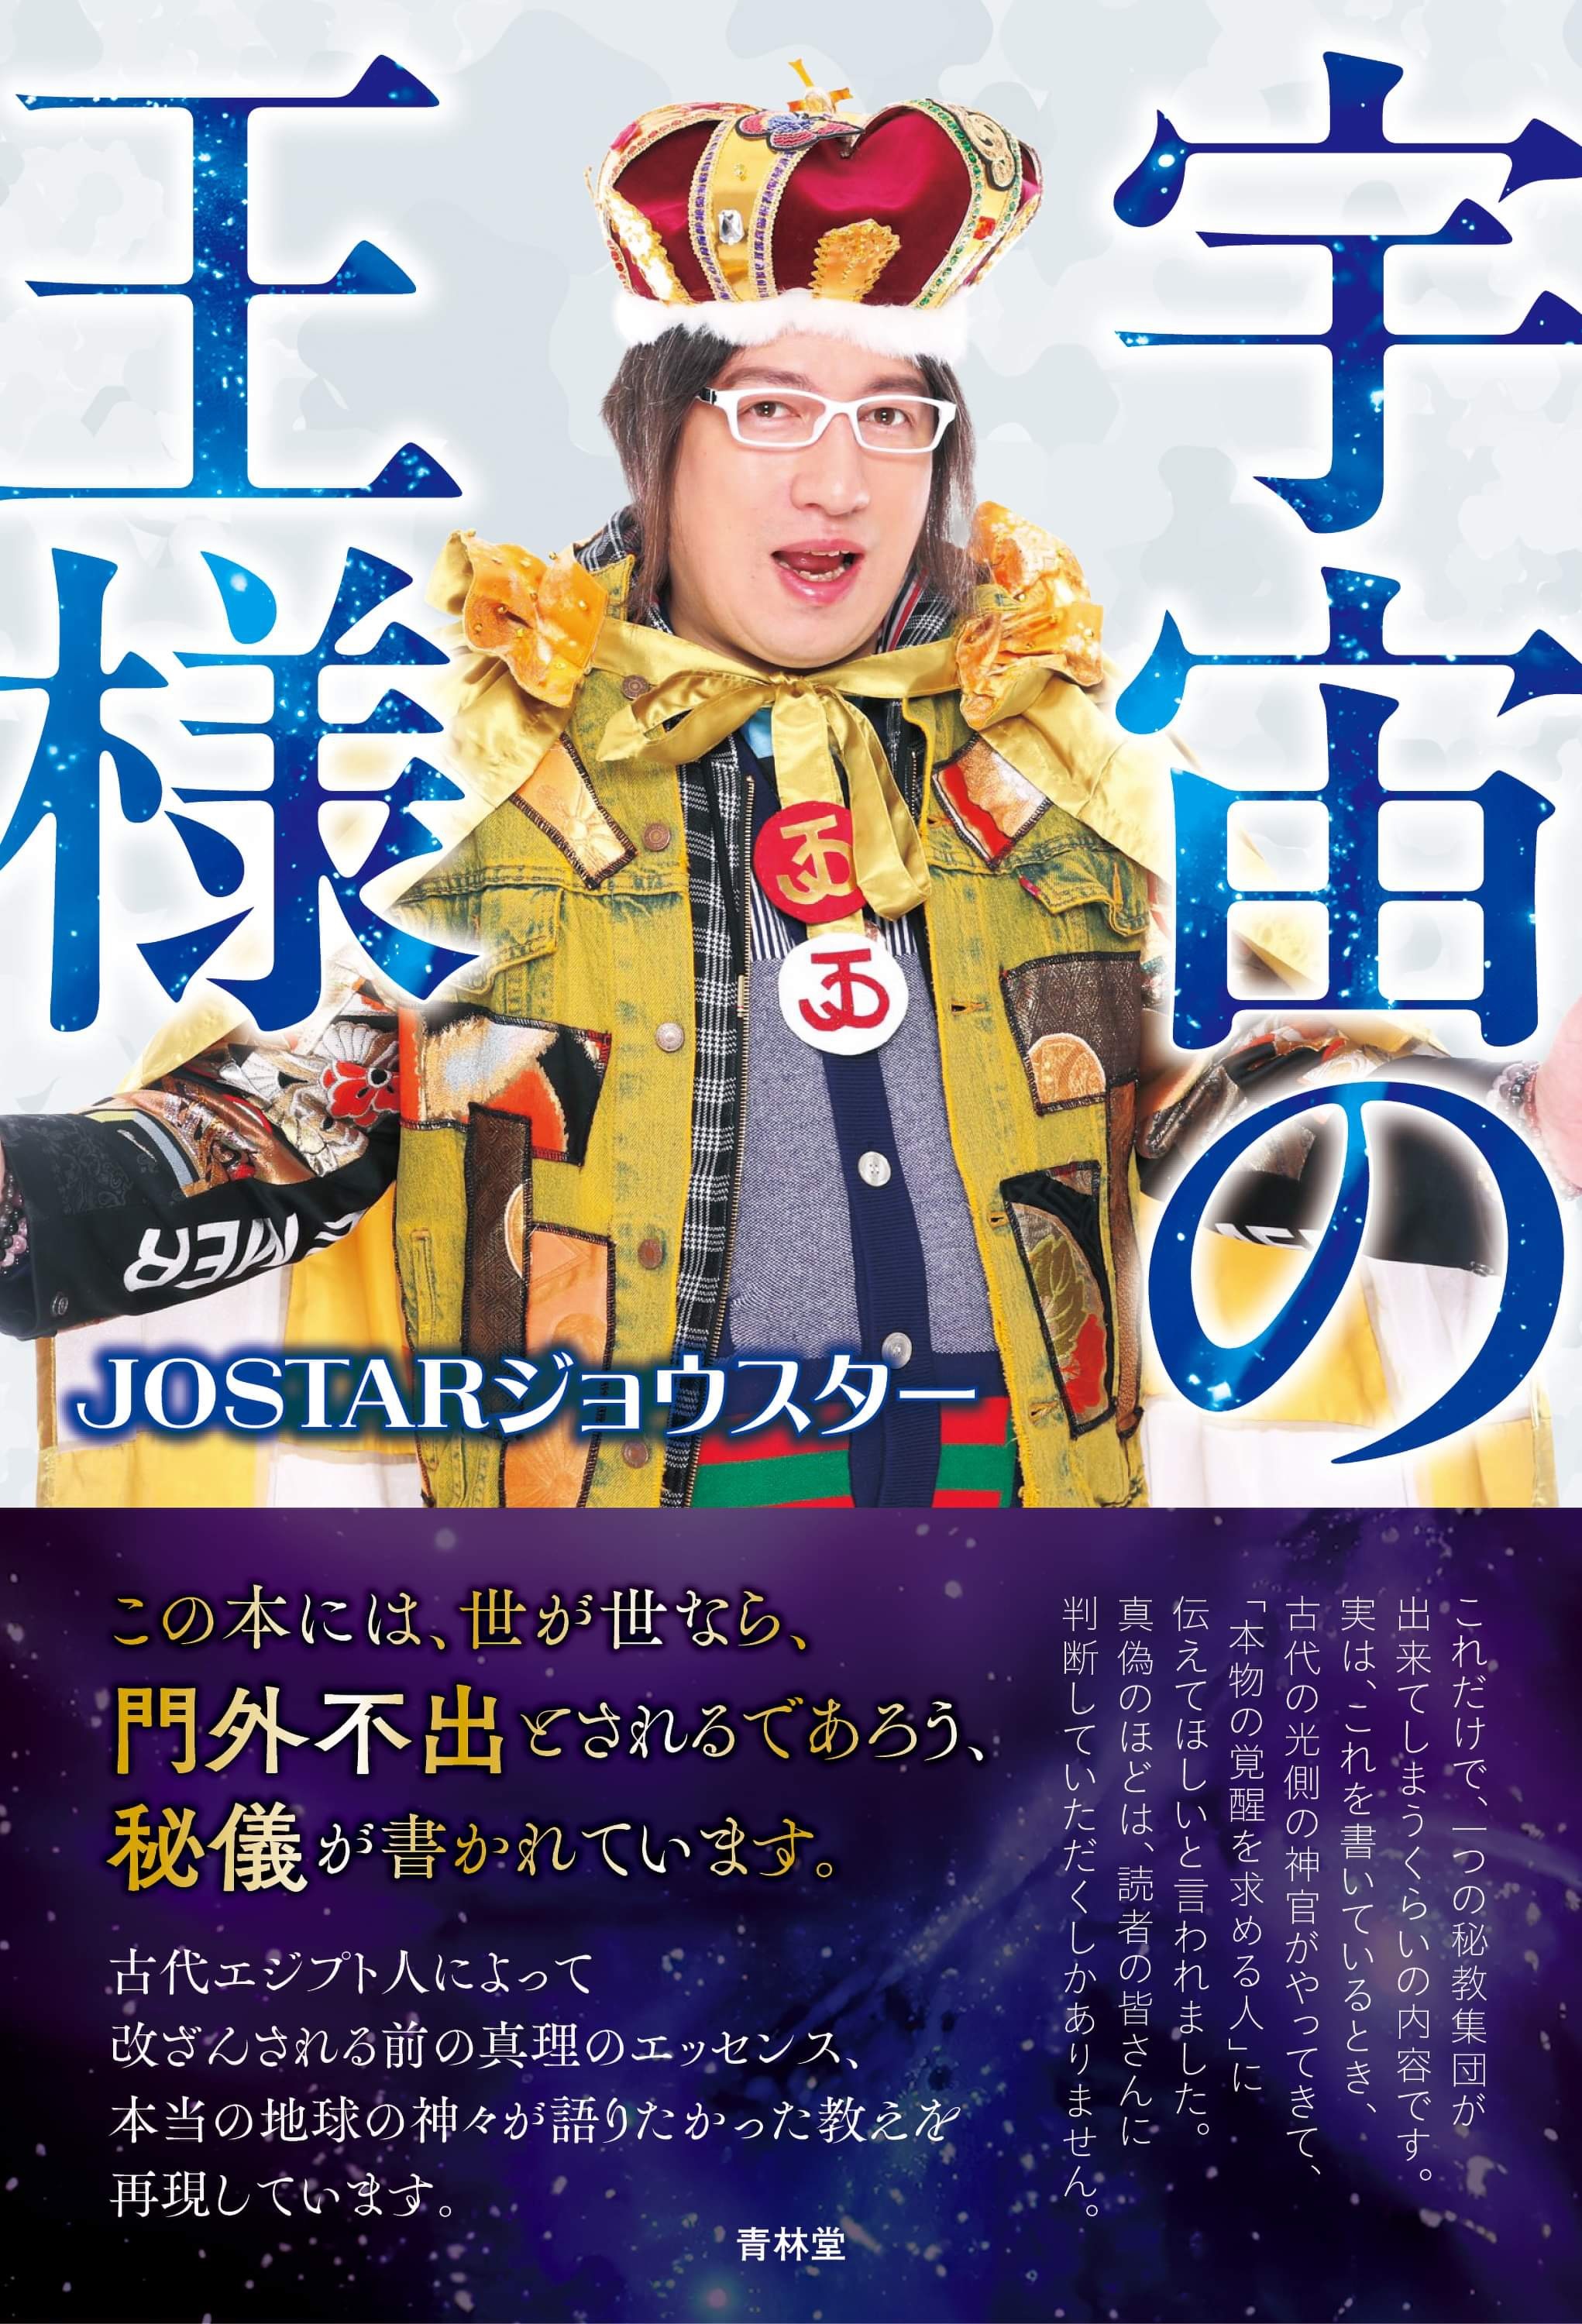 大人気YouTuber JOSTARジョウスターが新刊本『宇宙の王様』を3月6日 